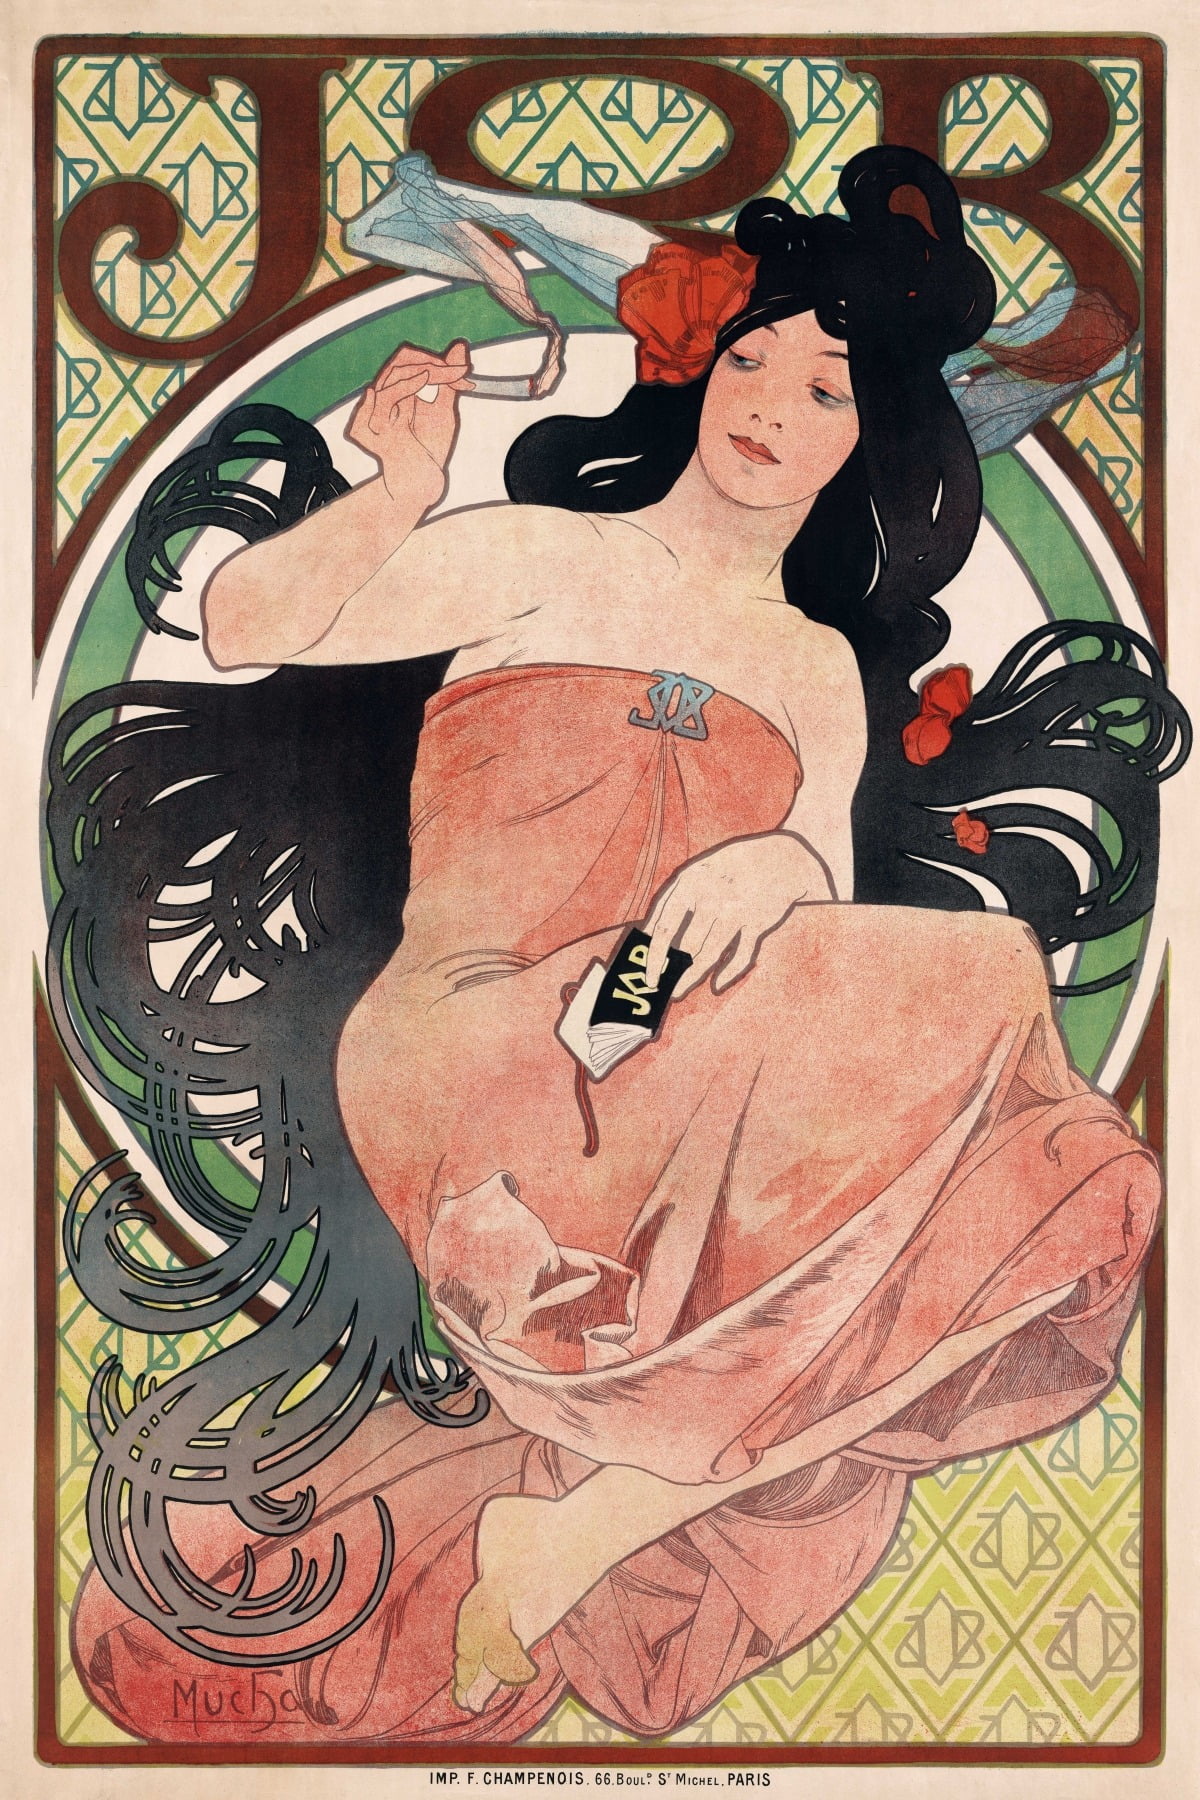 <그림 5- 알폰스 무하, JOB 담배 종이 광고 포스터, 1898, In Wikipedia> 